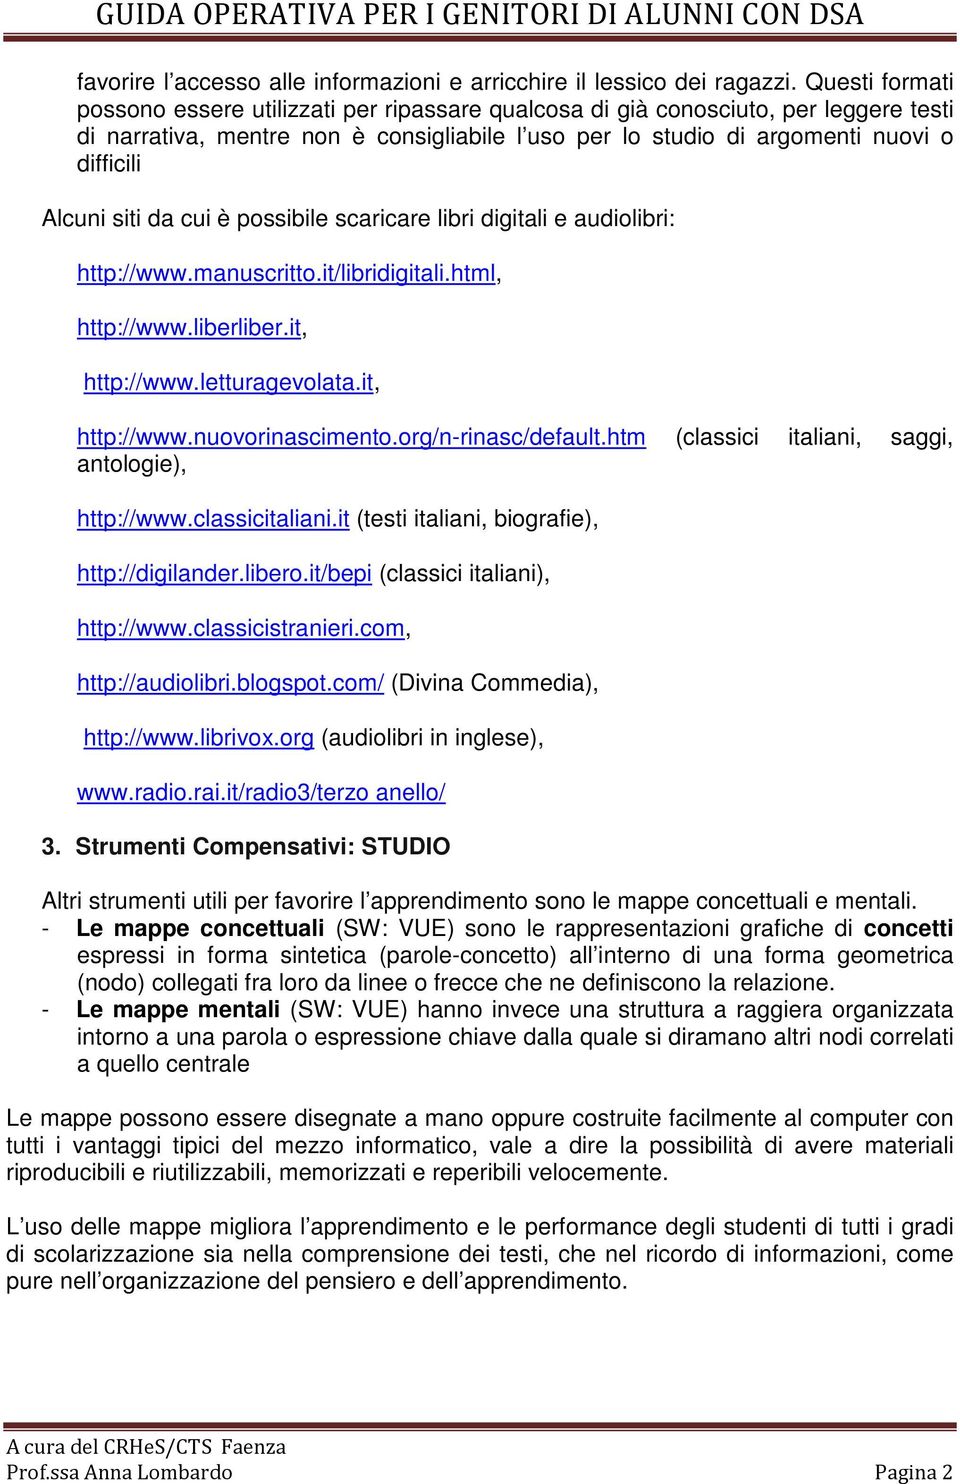 siti da cui è possibile scaricare libri digitali e audiolibri: http://www.manuscritto.it/libridigitali.html, http://www.liberliber.it, http://www.letturagevolata.it, http://www.nuovorinascimento.